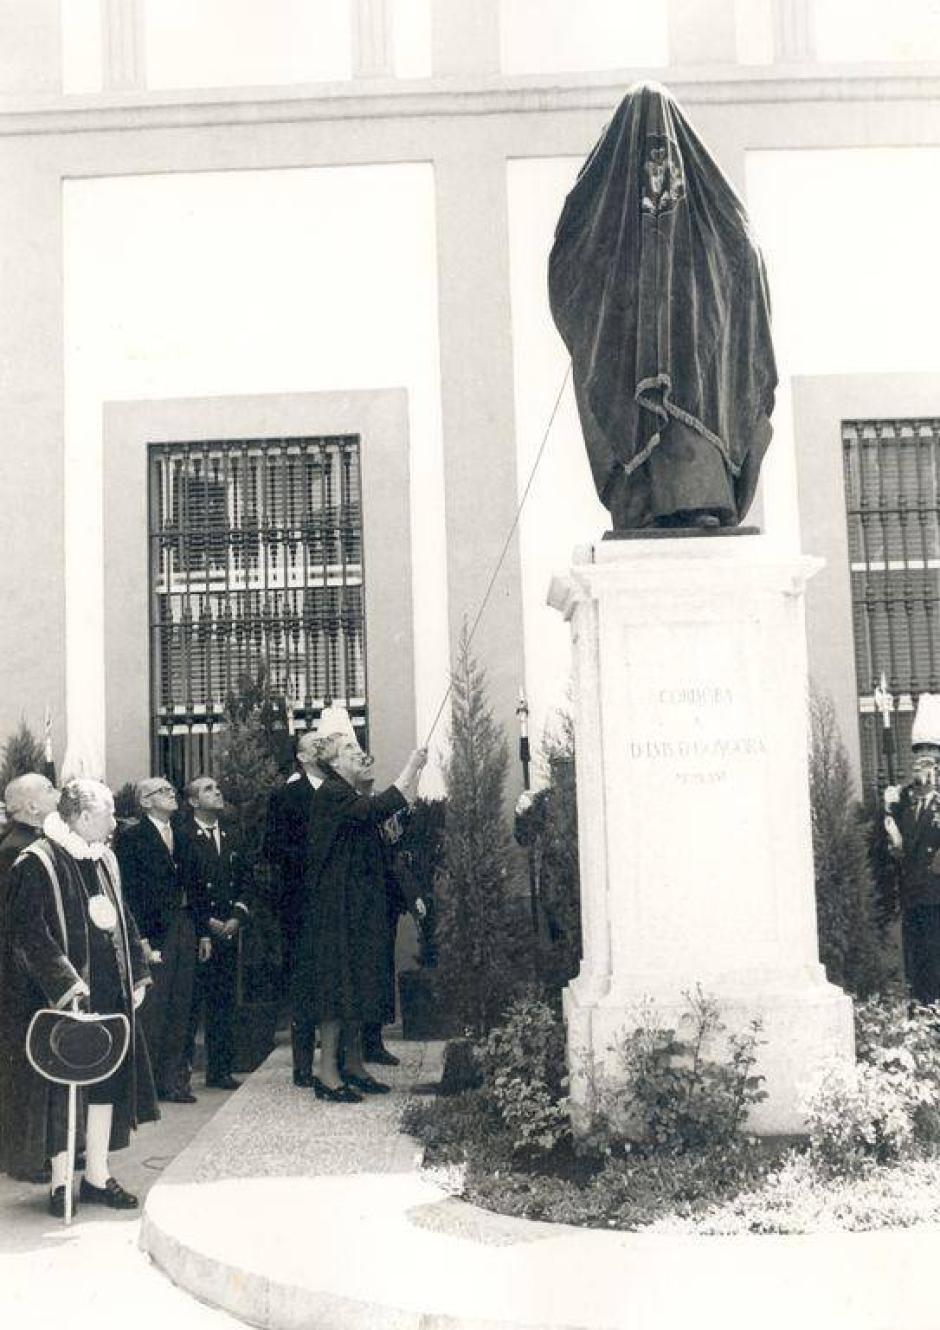 La duquesa de Rivas descubre el monumento a Góngora